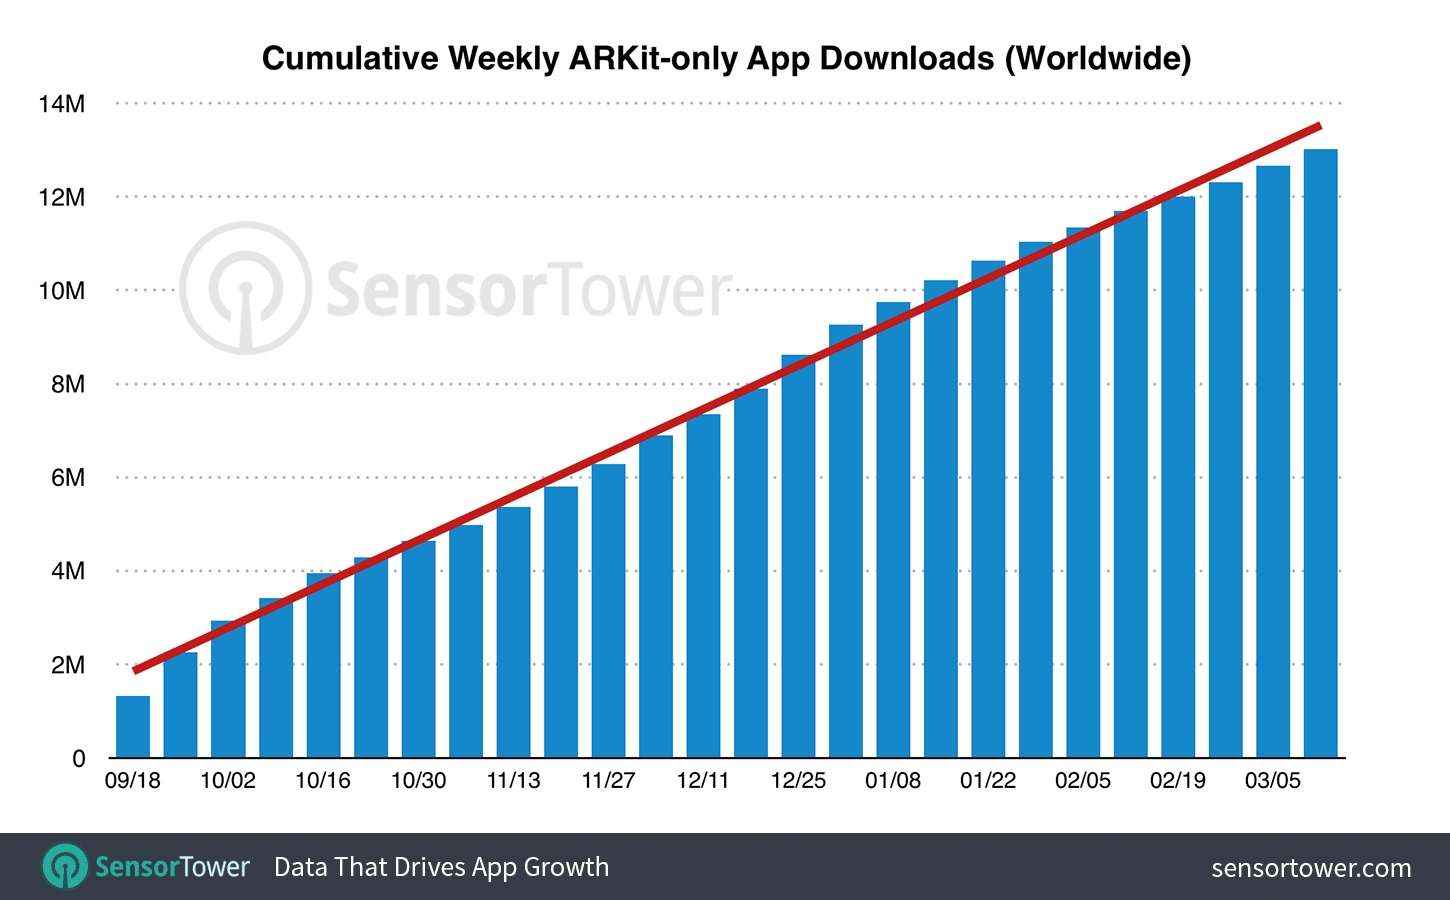 Las apps de realidad aumentada de iOS superan los 13 millones de descargas